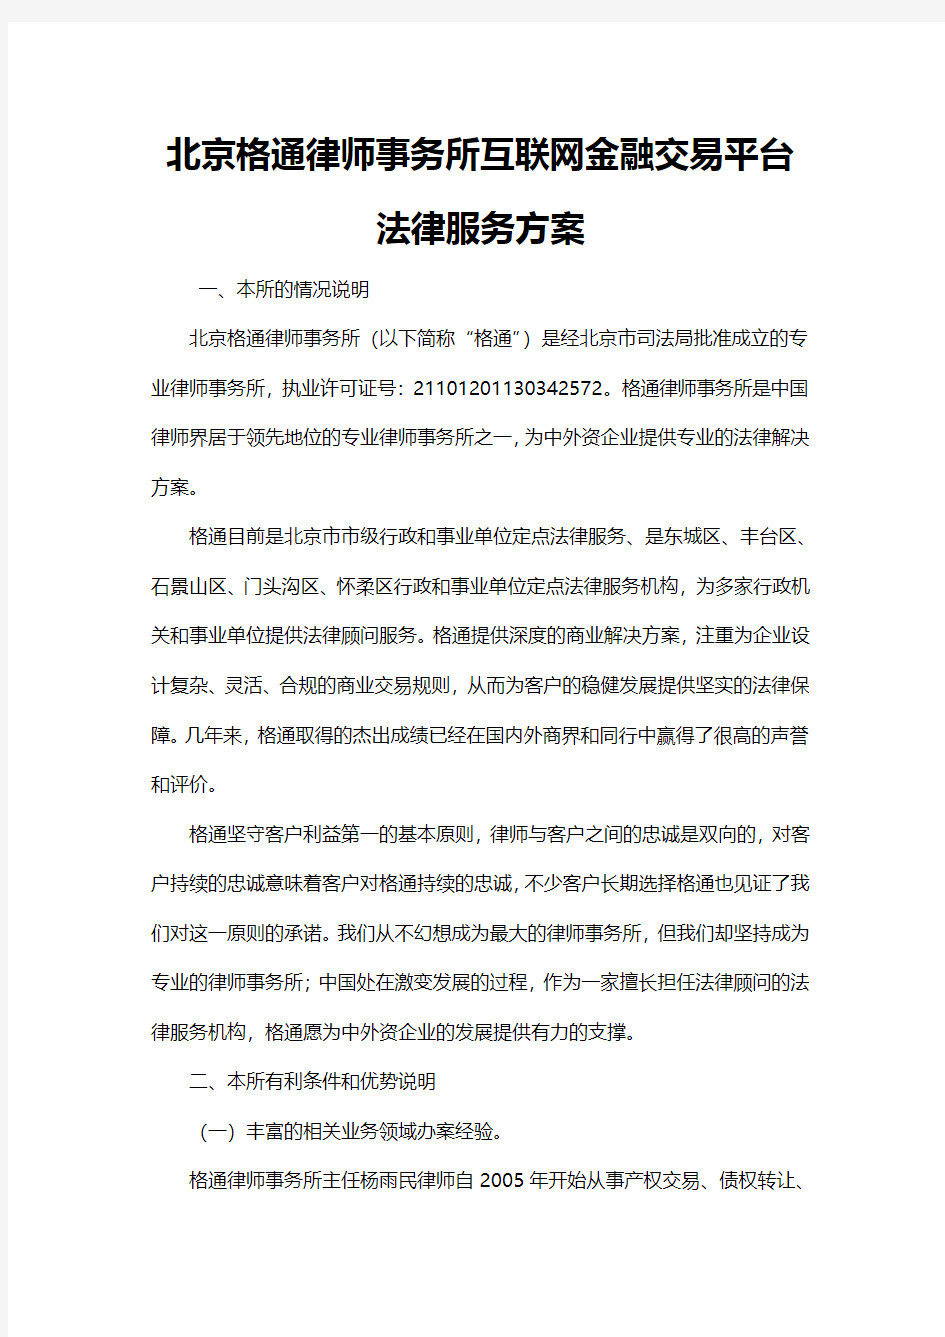 北京格通律师事务所互联网金融交易平台法律服务方案